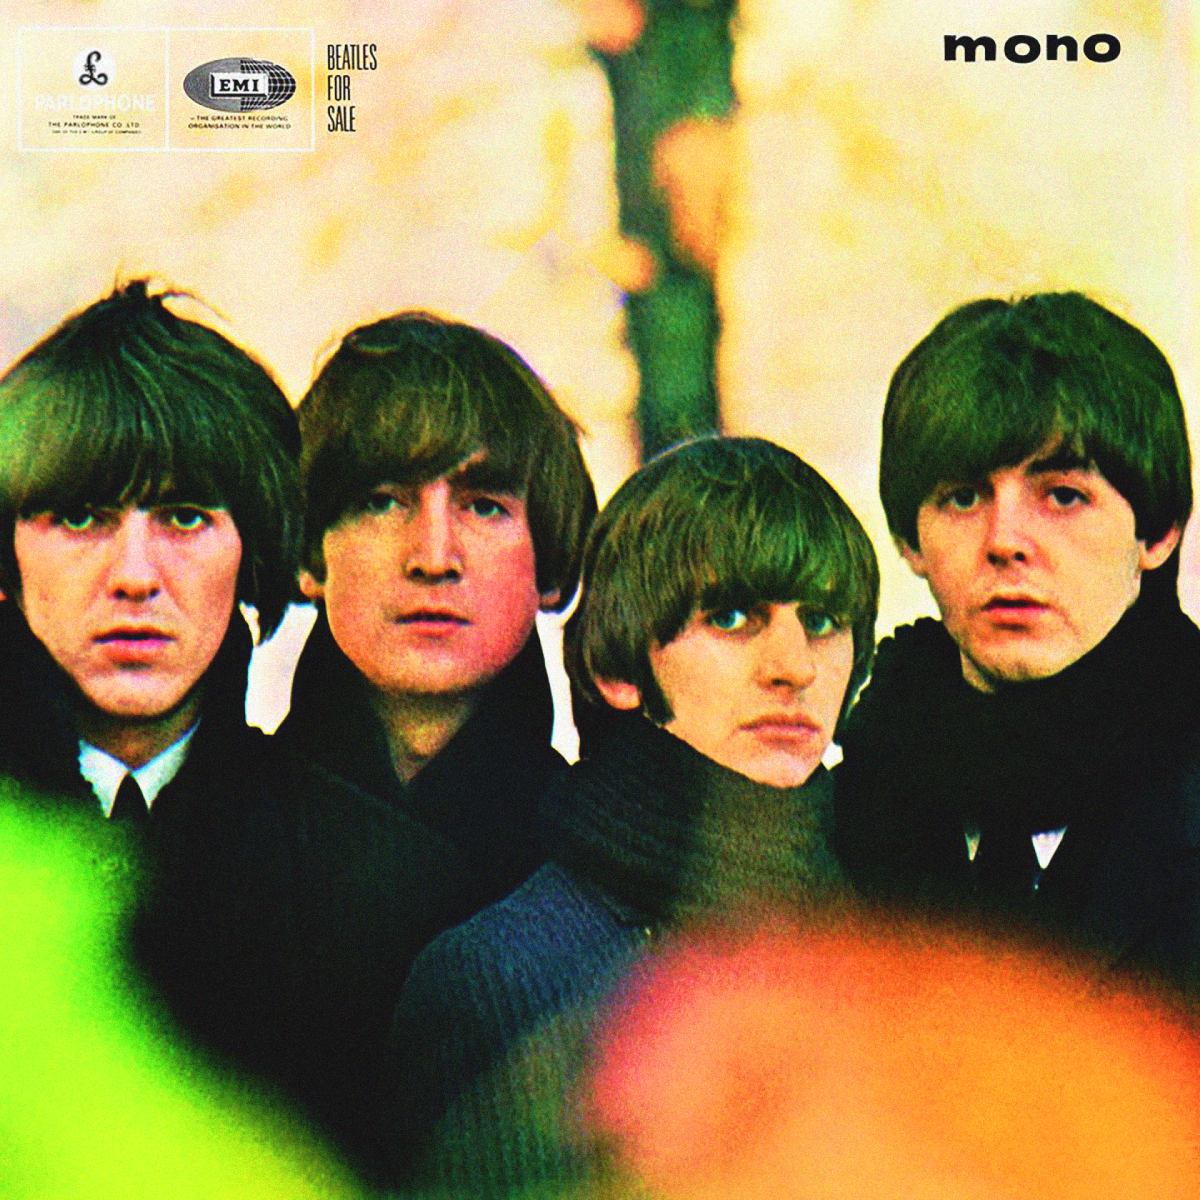 Beatles à vendre (1964)